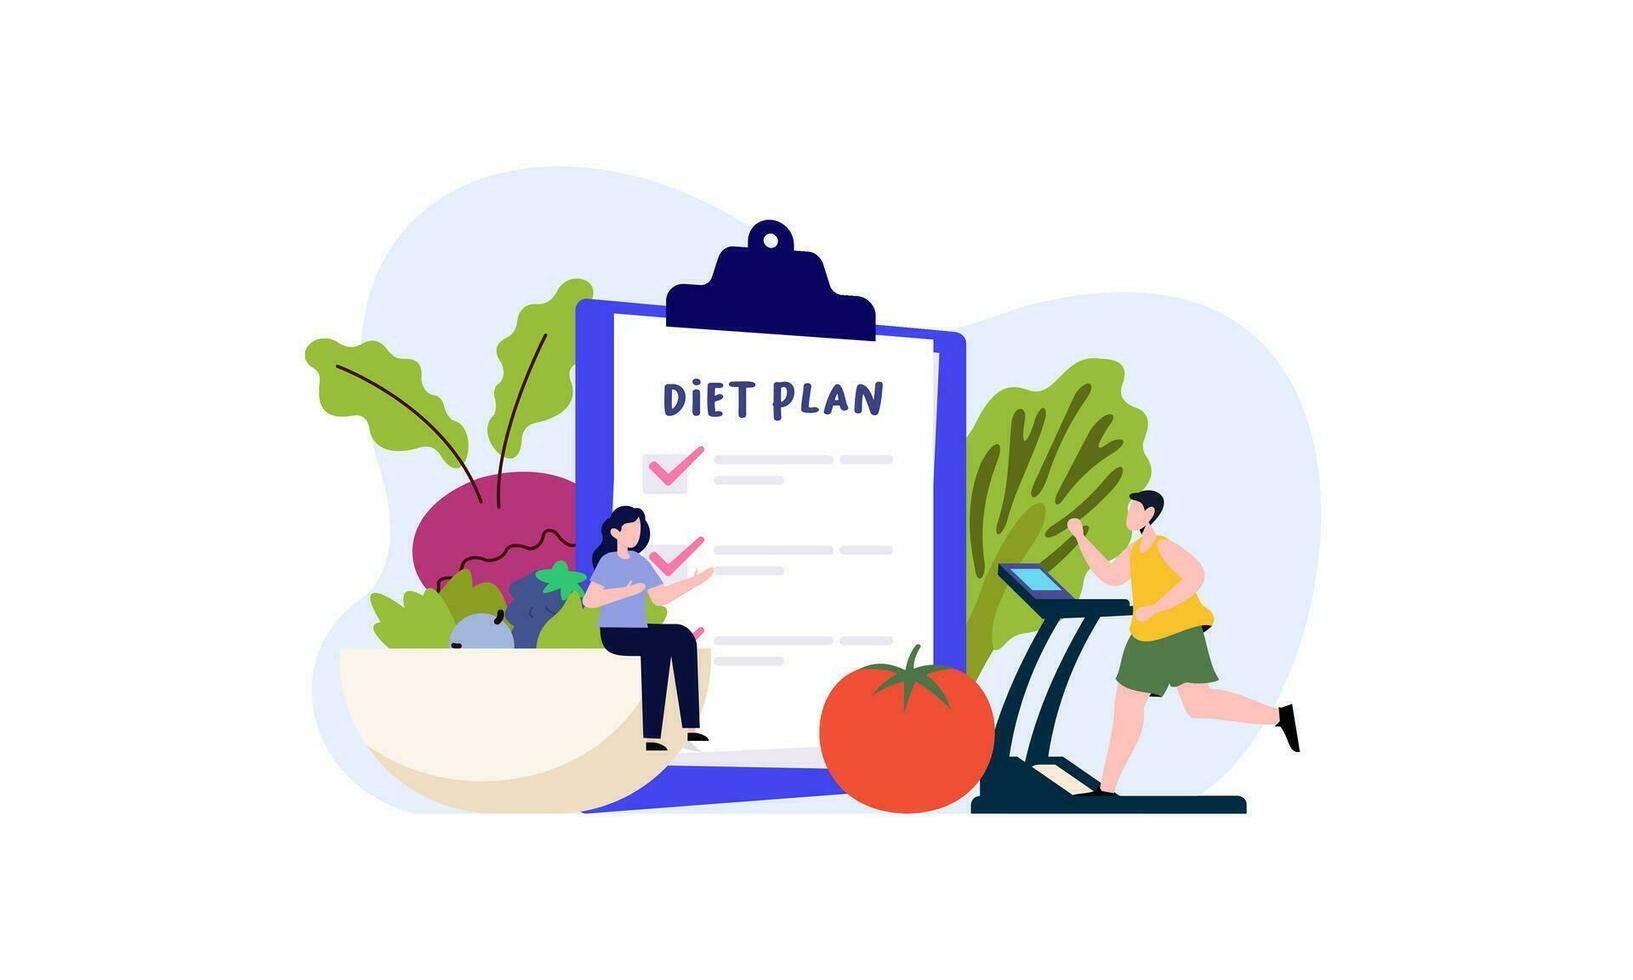 dieta plan Lista de Verificación ilustración. personas haciendo ejercicio, formación y planificación dieta con Fruta y vegetal. vector